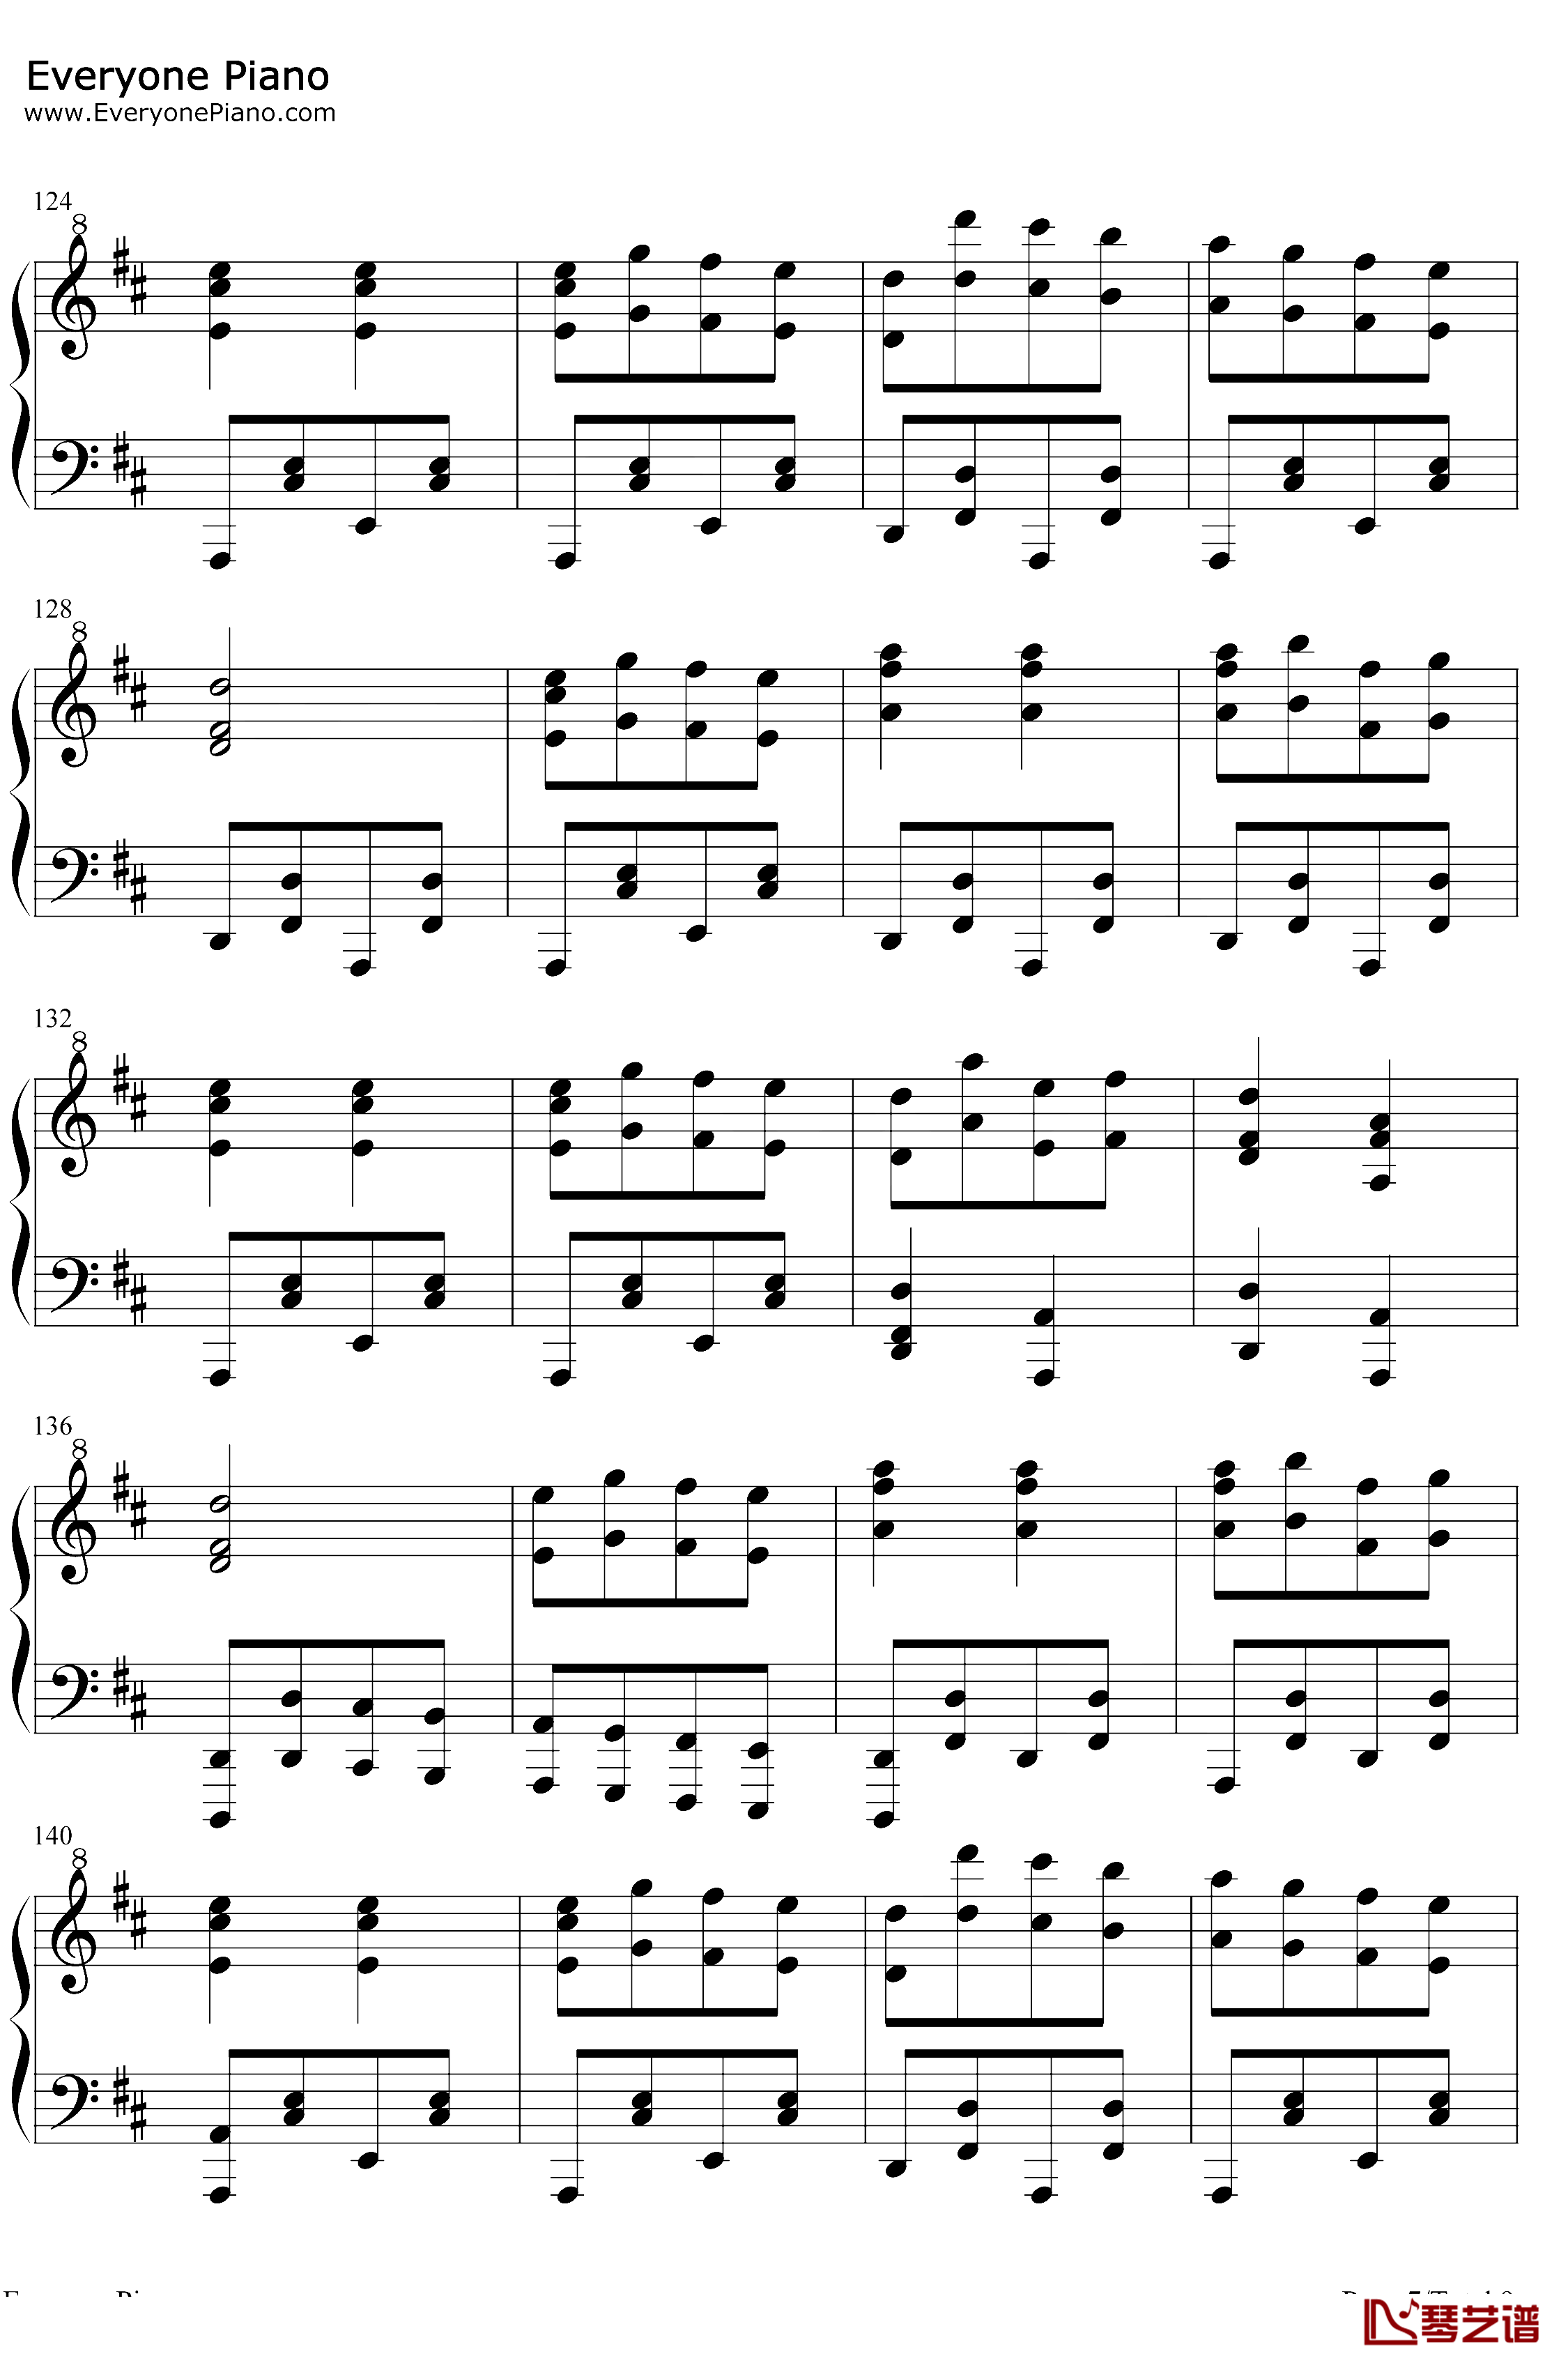 康康舞曲钢琴谱-雅克·奥芬巴赫-触手猴版-天堂与地狱序曲-地狱中的奥菲欧序曲7